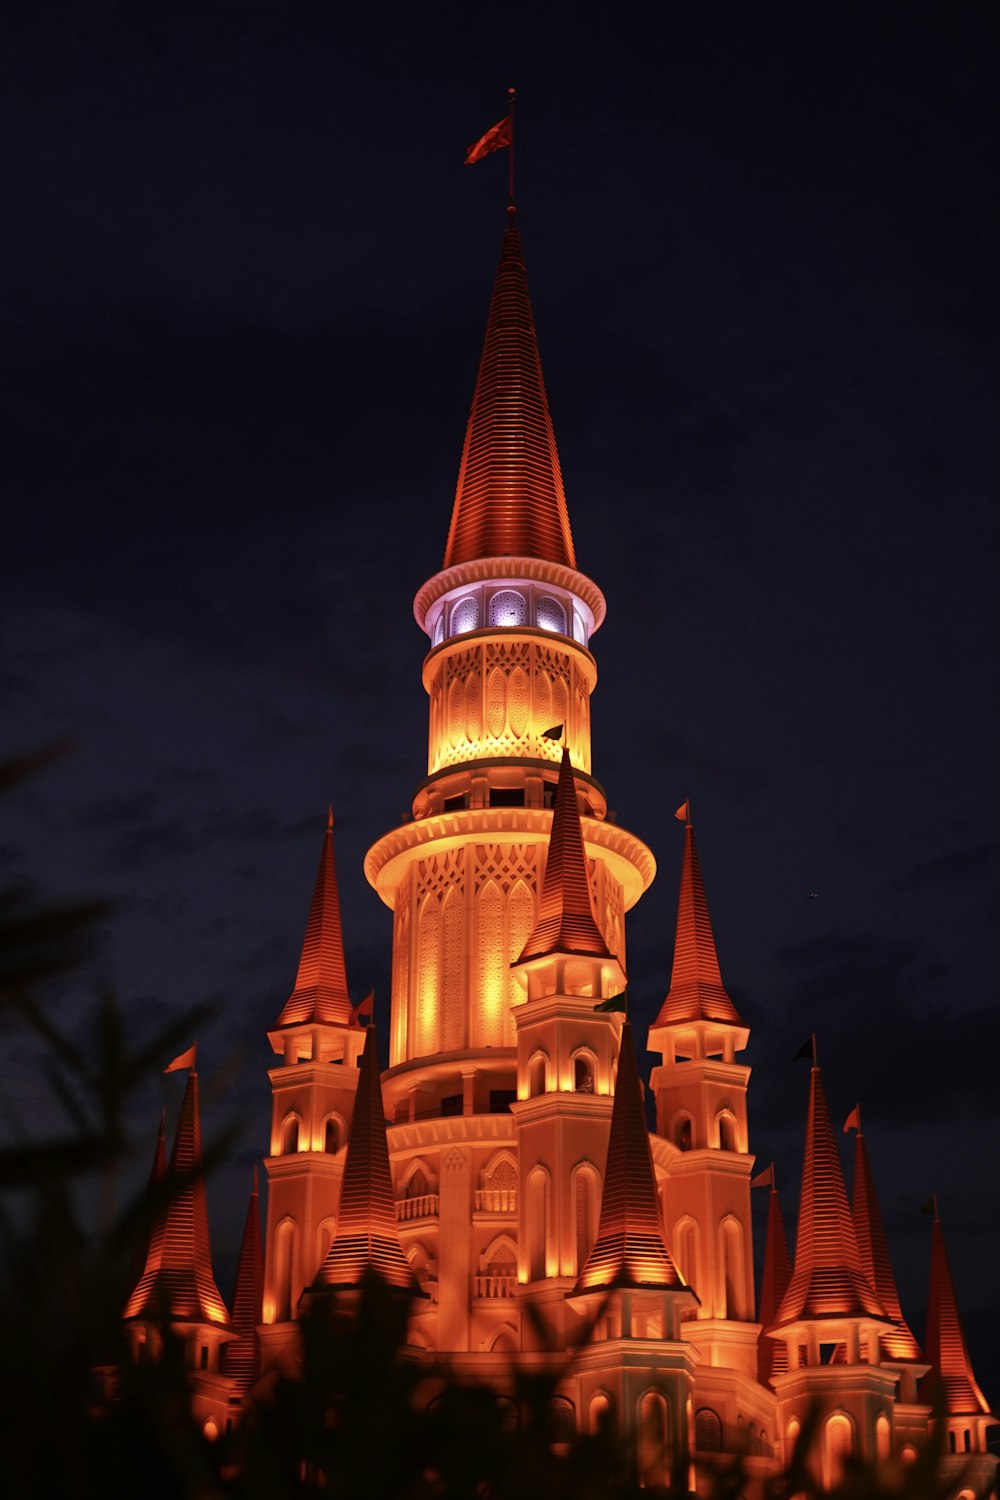 Un castillo iluminado por la noche con una bandera en la parte superior